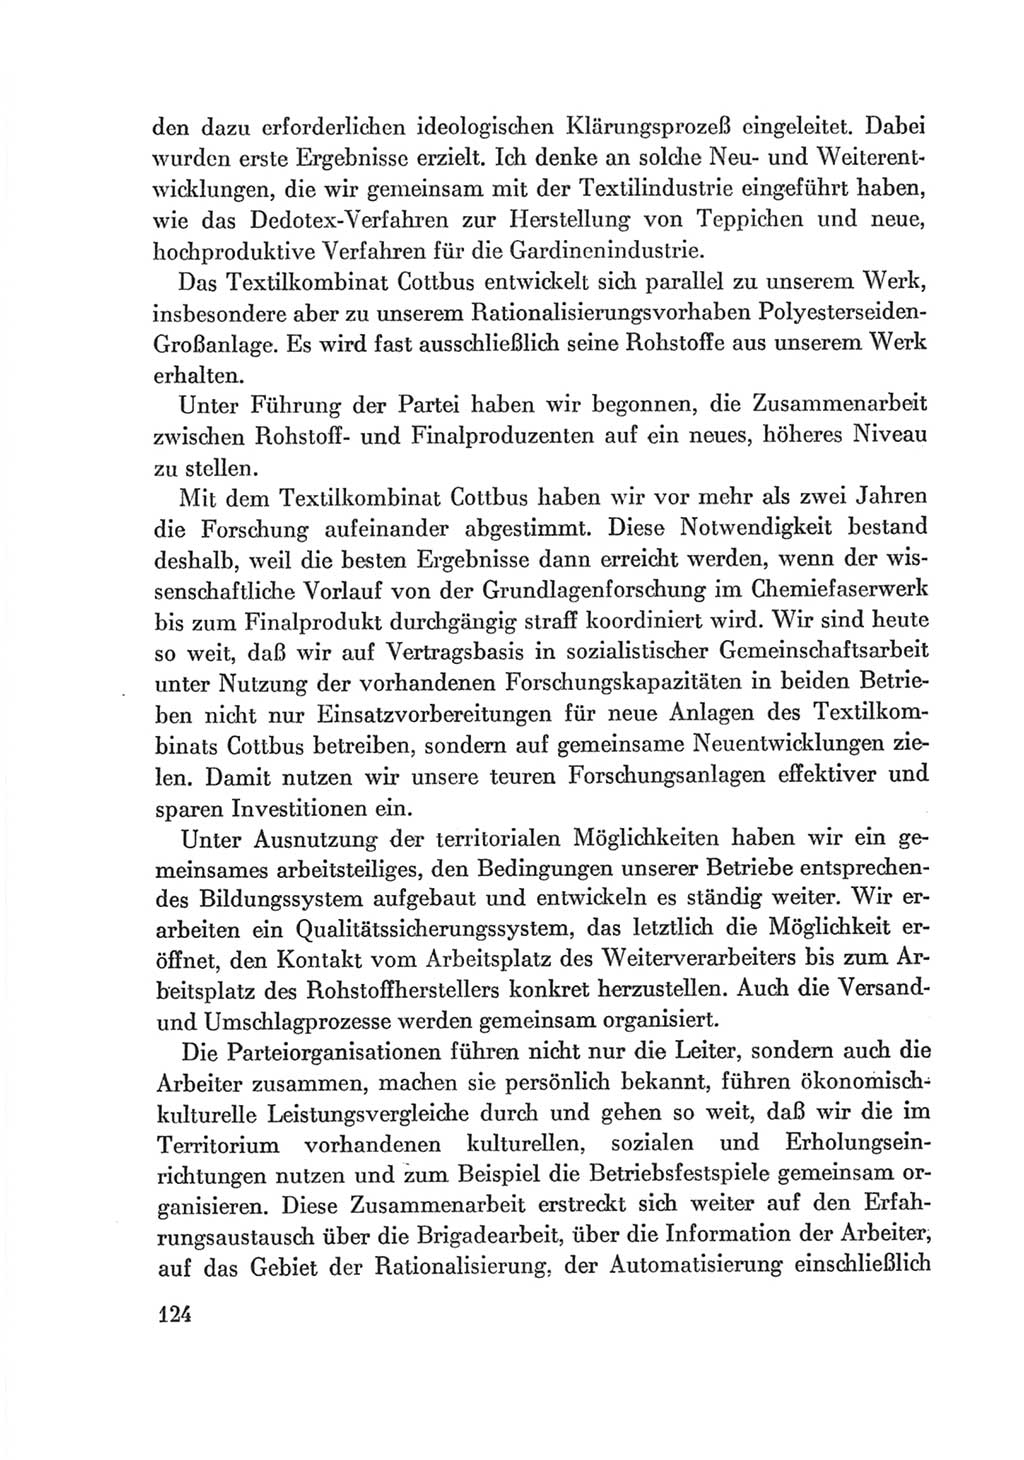 Protokoll der Verhandlungen des Ⅷ. Parteitages der Sozialistischen Einheitspartei Deutschlands (SED) [Deutsche Demokratische Republik (DDR)] 1971, Band 2, Seite 124 (Prot. Verh. Ⅷ. PT SED DDR 1971, Bd. 2, S. 124)